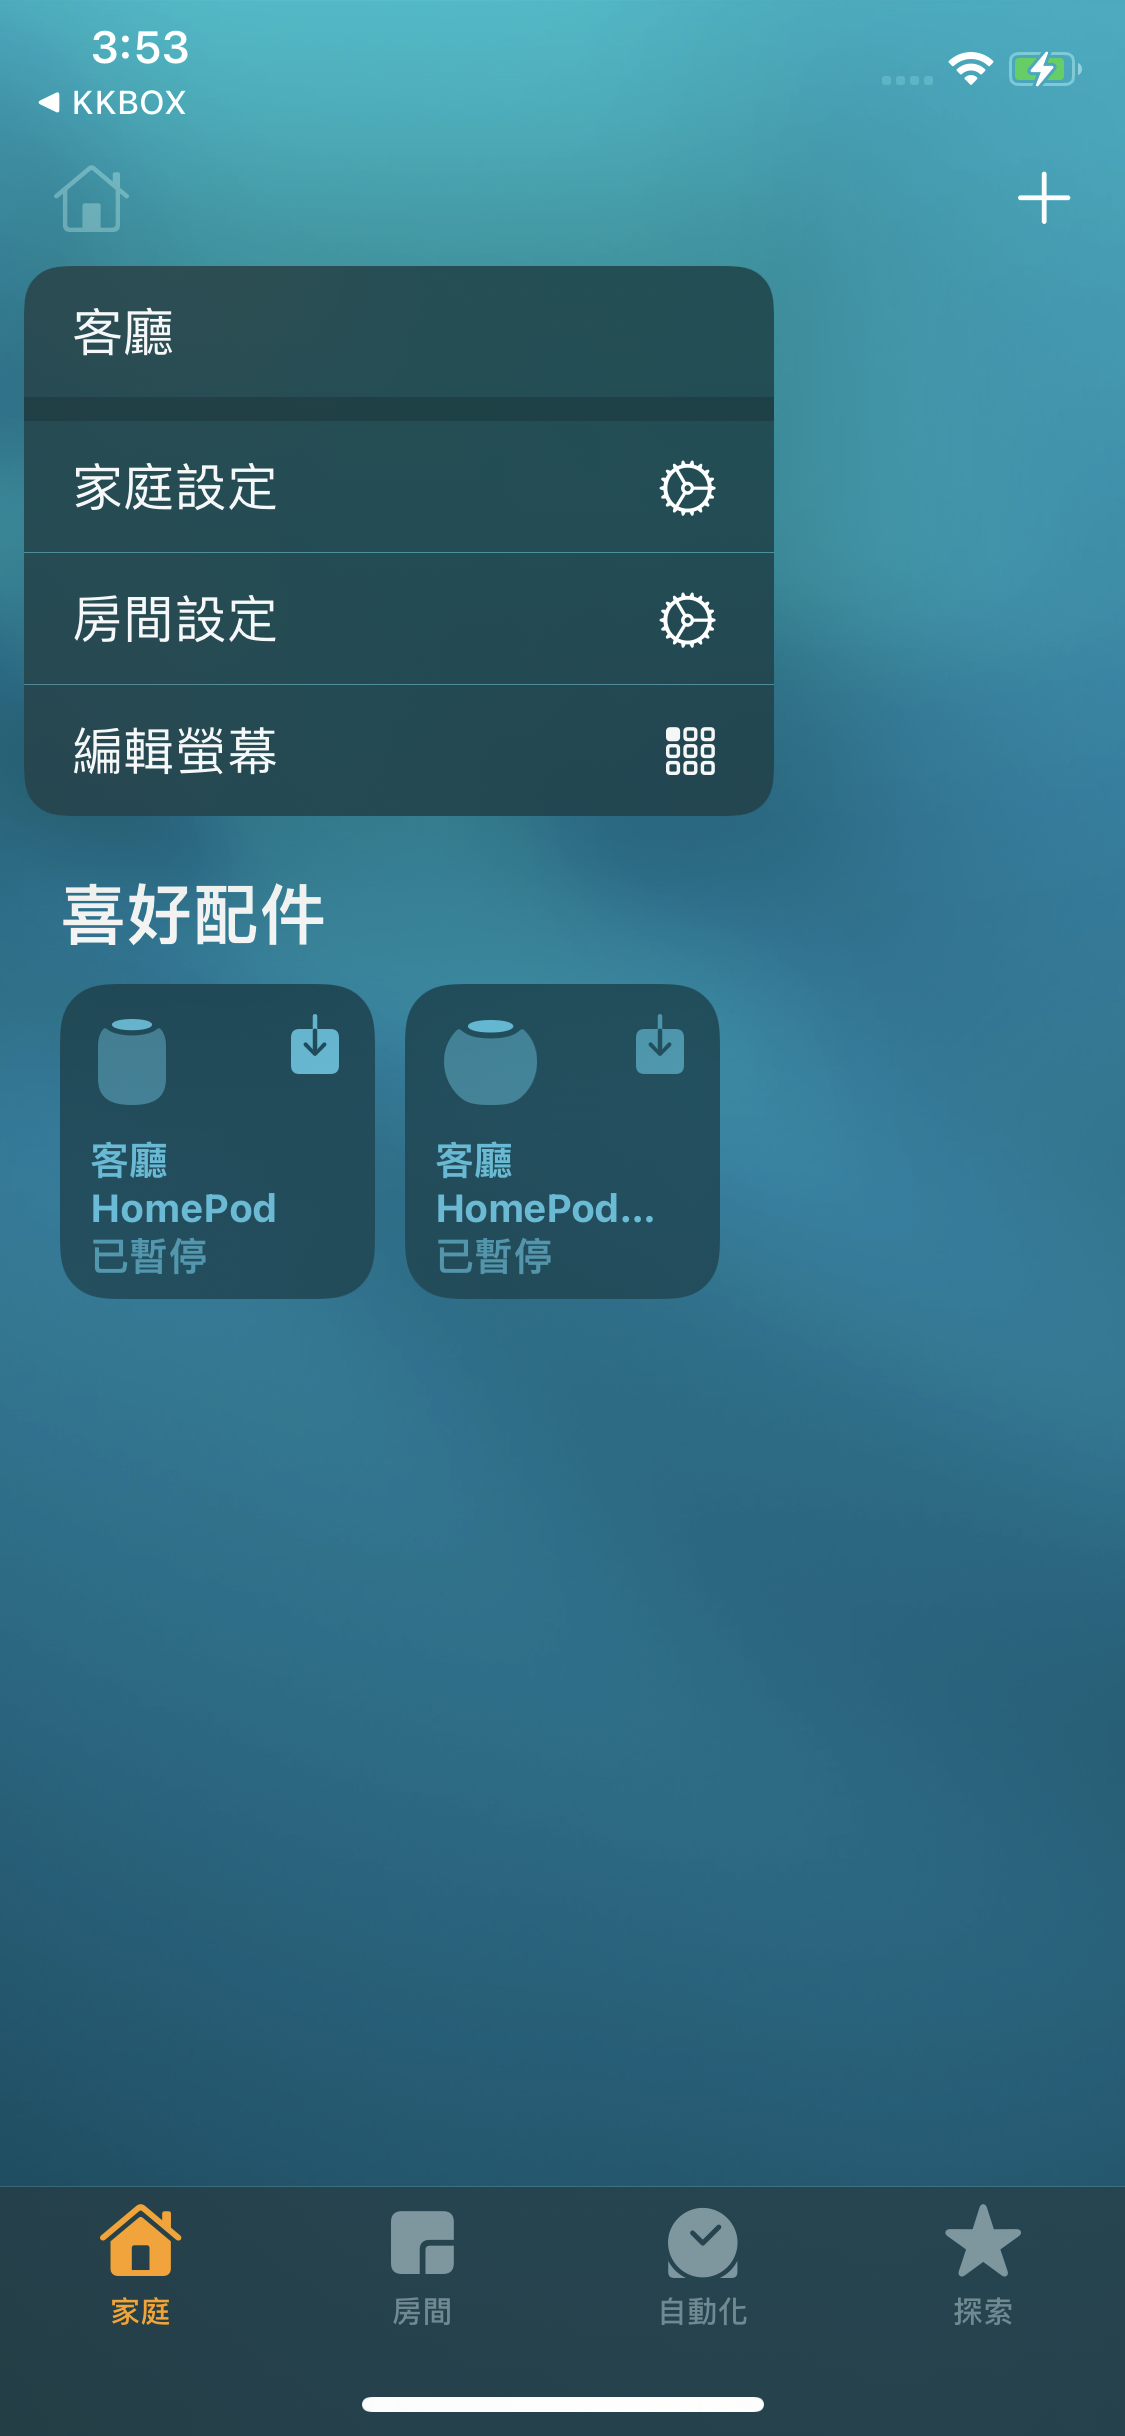 將 KKBOX 設定為 HomePod 預設音樂服務 - 1